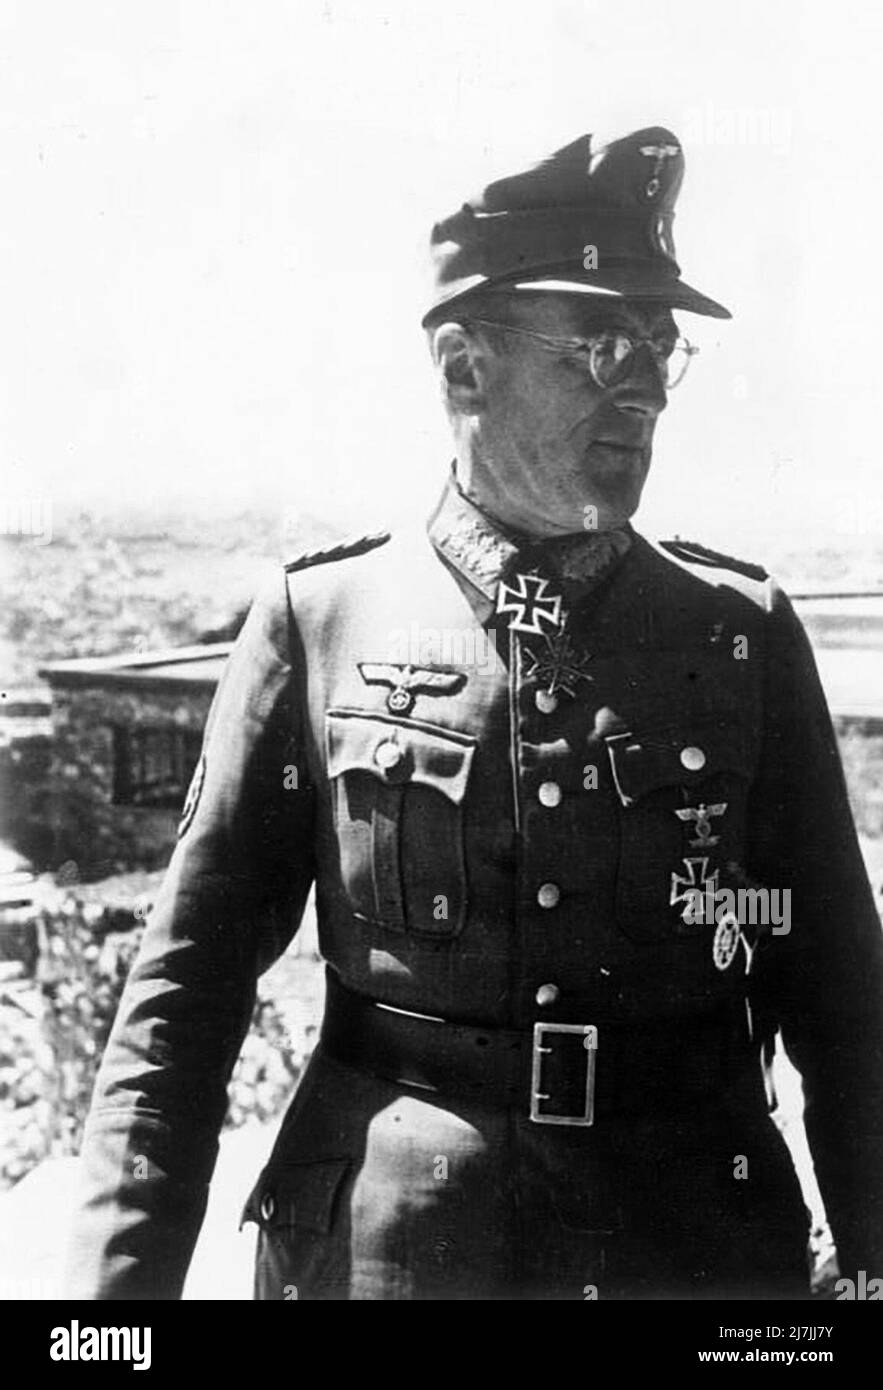 Ferdinand Schörner war ein deutscher Militärkommandeur, der während des Zweiten Weltkriegs den Rang eines Generalfeldmarschalls in der Wehrmacht des Nazi-Deutschlands innehatte Er kommandierte mehrere Armeegruppen und war der letzte Oberbefehlshaber der deutschen Armee. Stockfoto